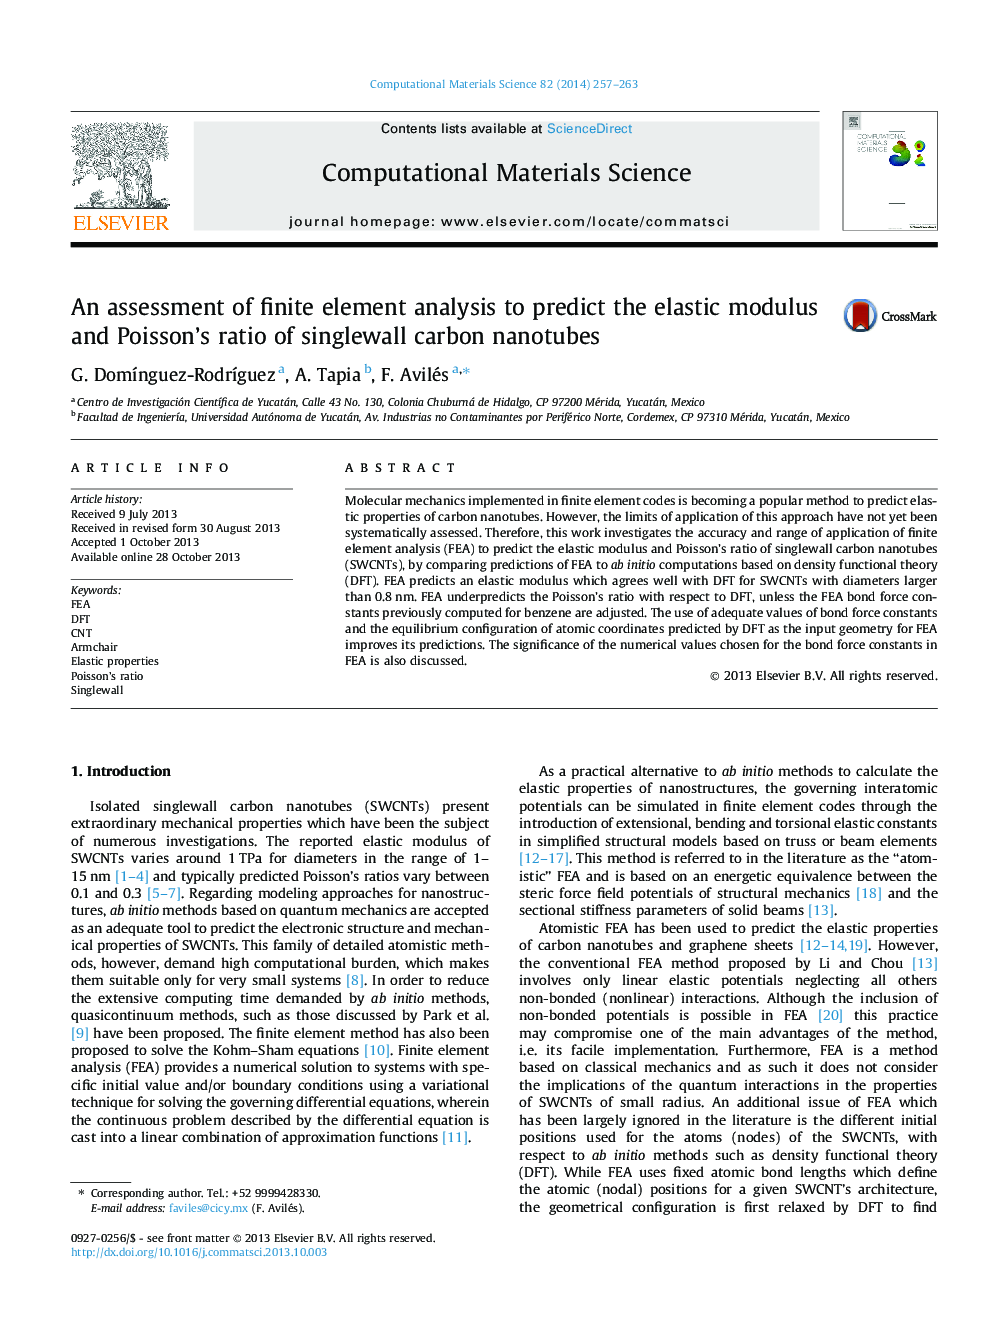 ارزیابی از تجزیه و تحلیل عناصر محدود برای پیش بینی مدول الاستیک و نسبت پواسون از نانولوله های کربنی تک واول 